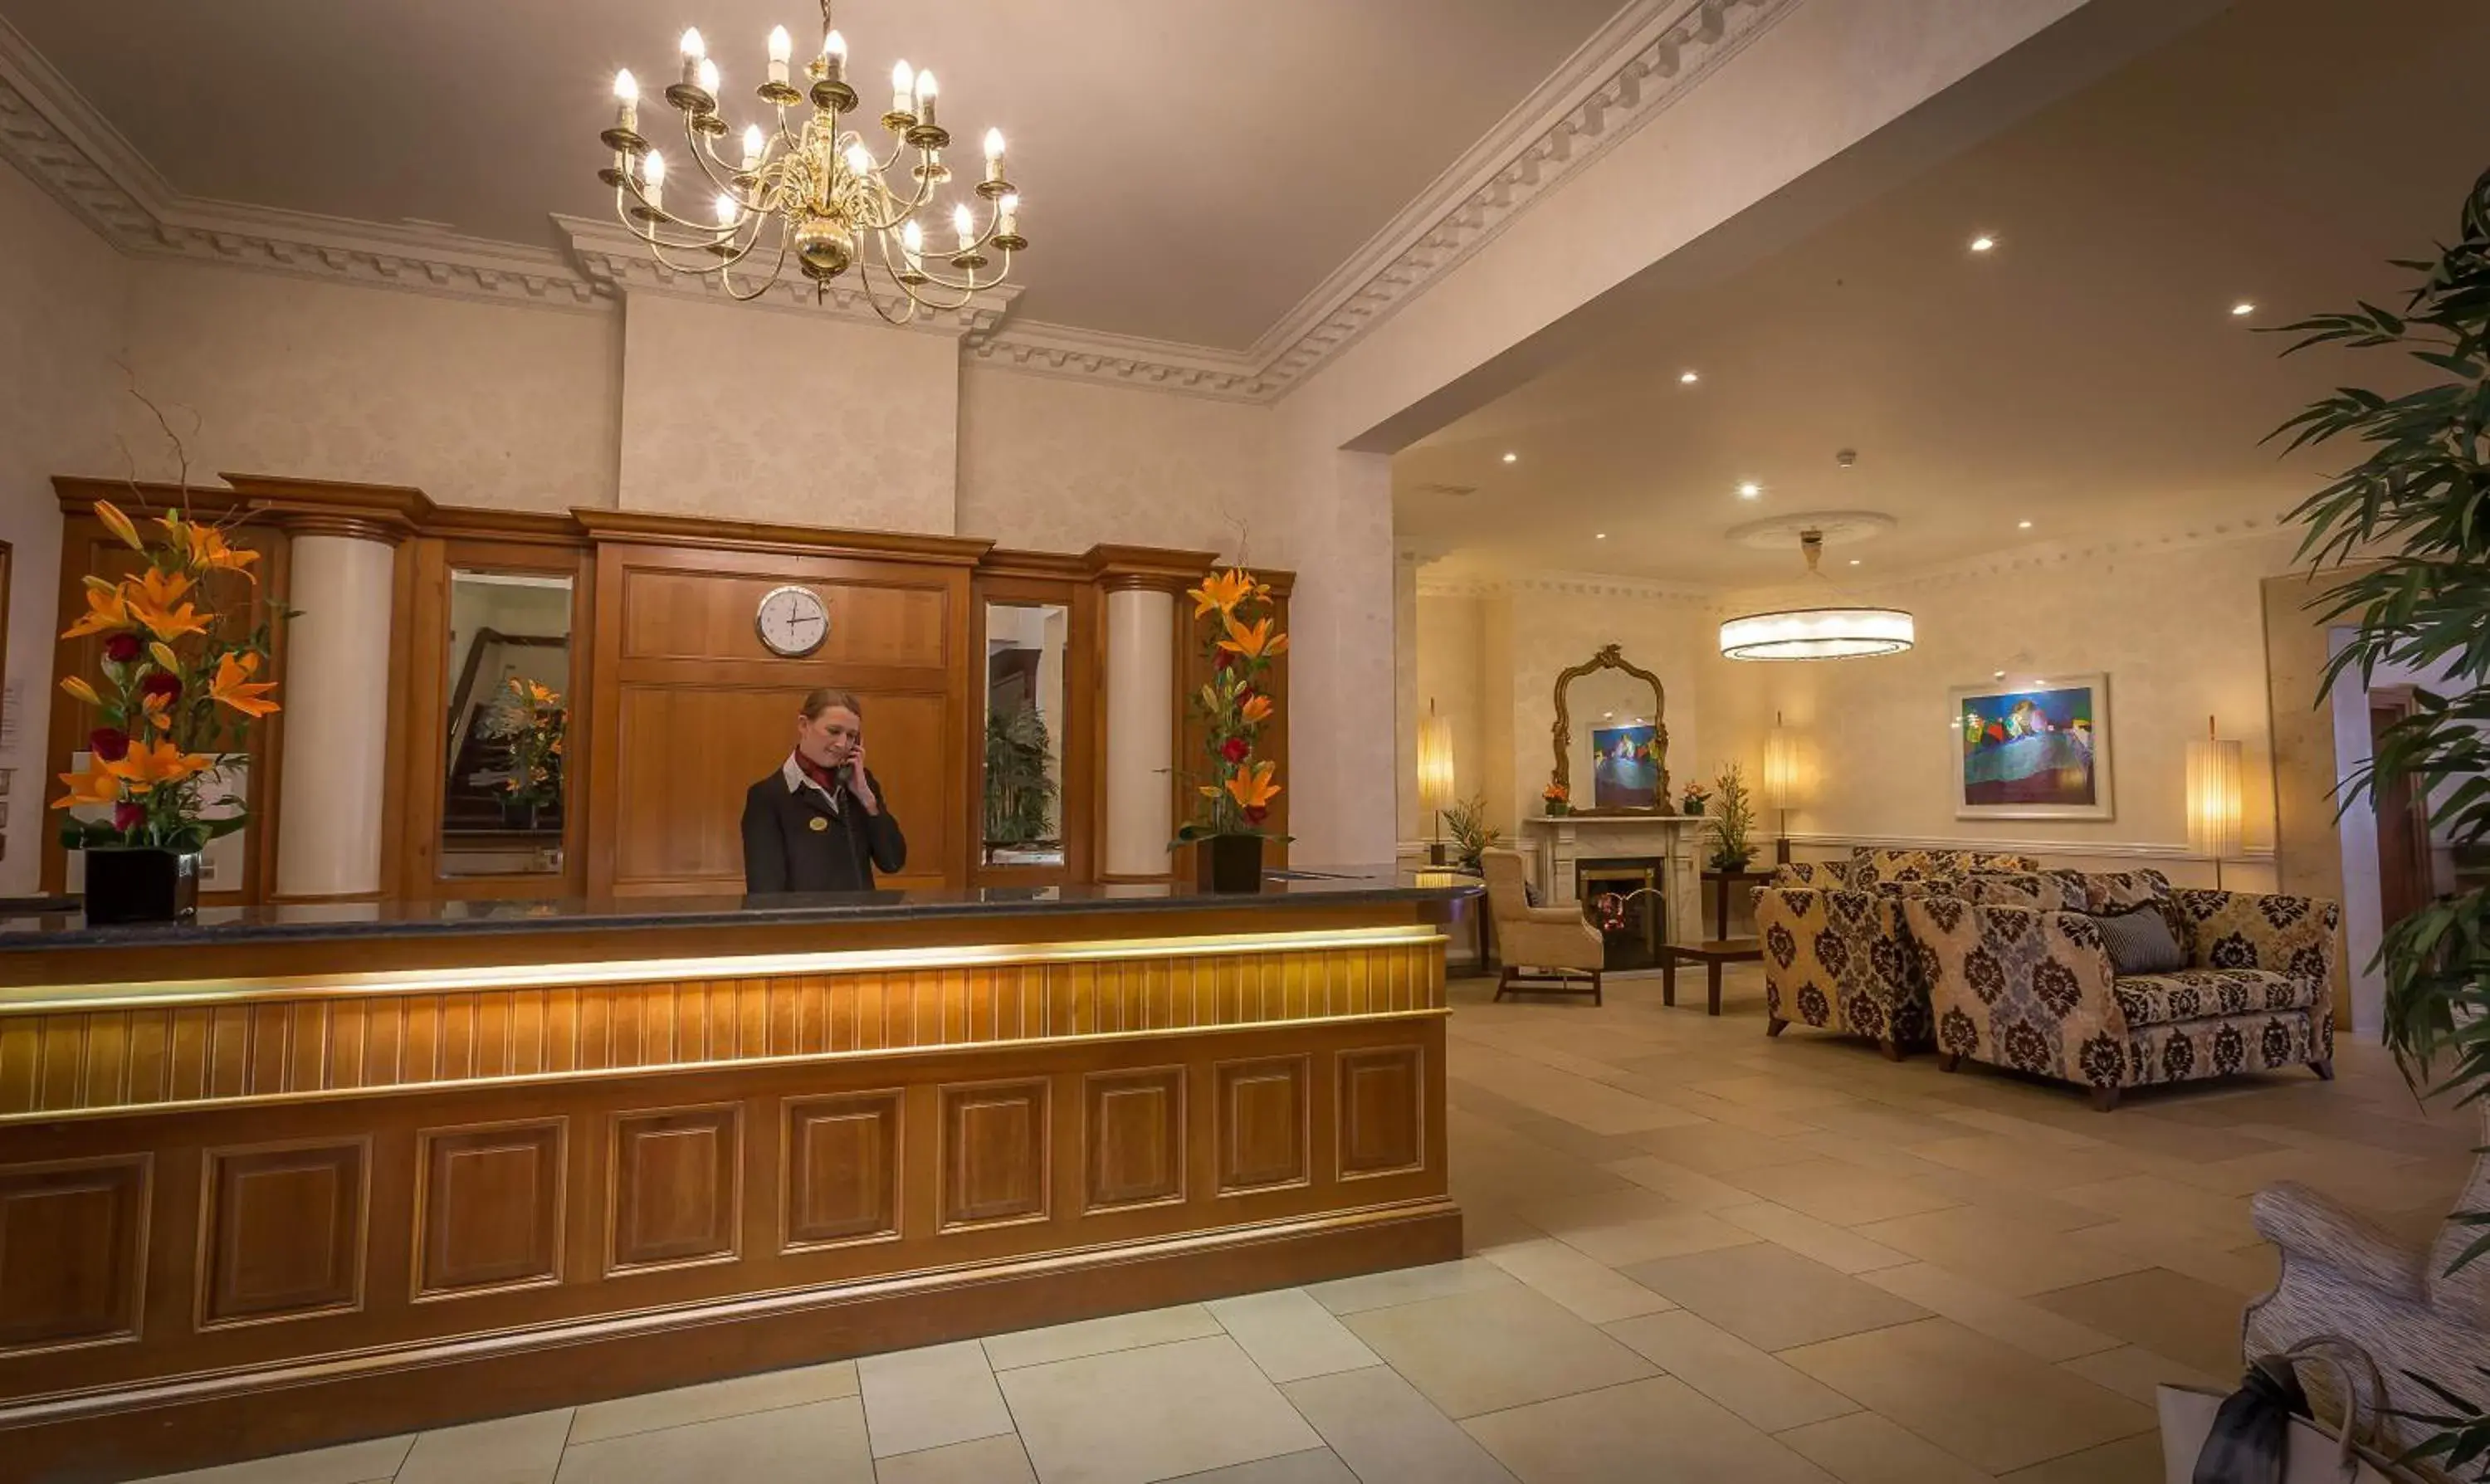 Lobby or reception, Lobby/Reception in Marine Hotel